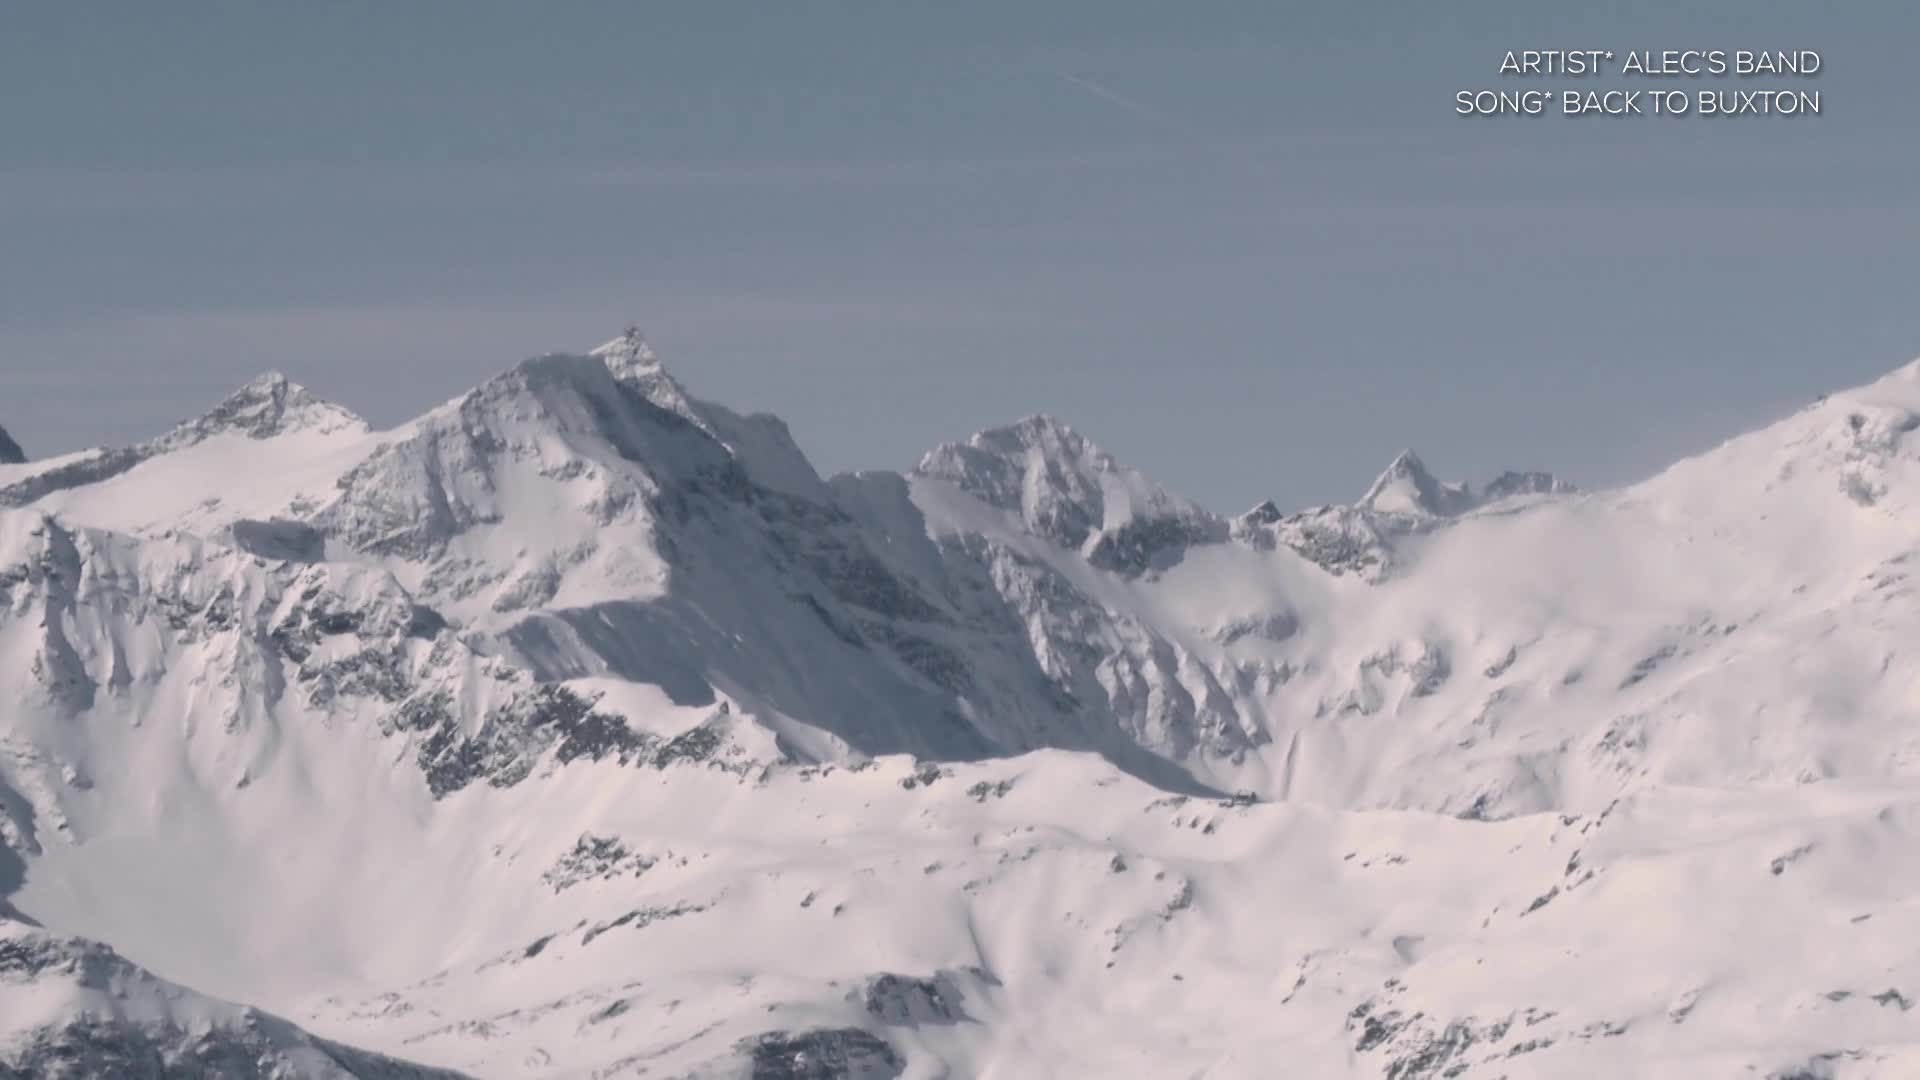 Gastein - Snowboard Powderdays - February 15